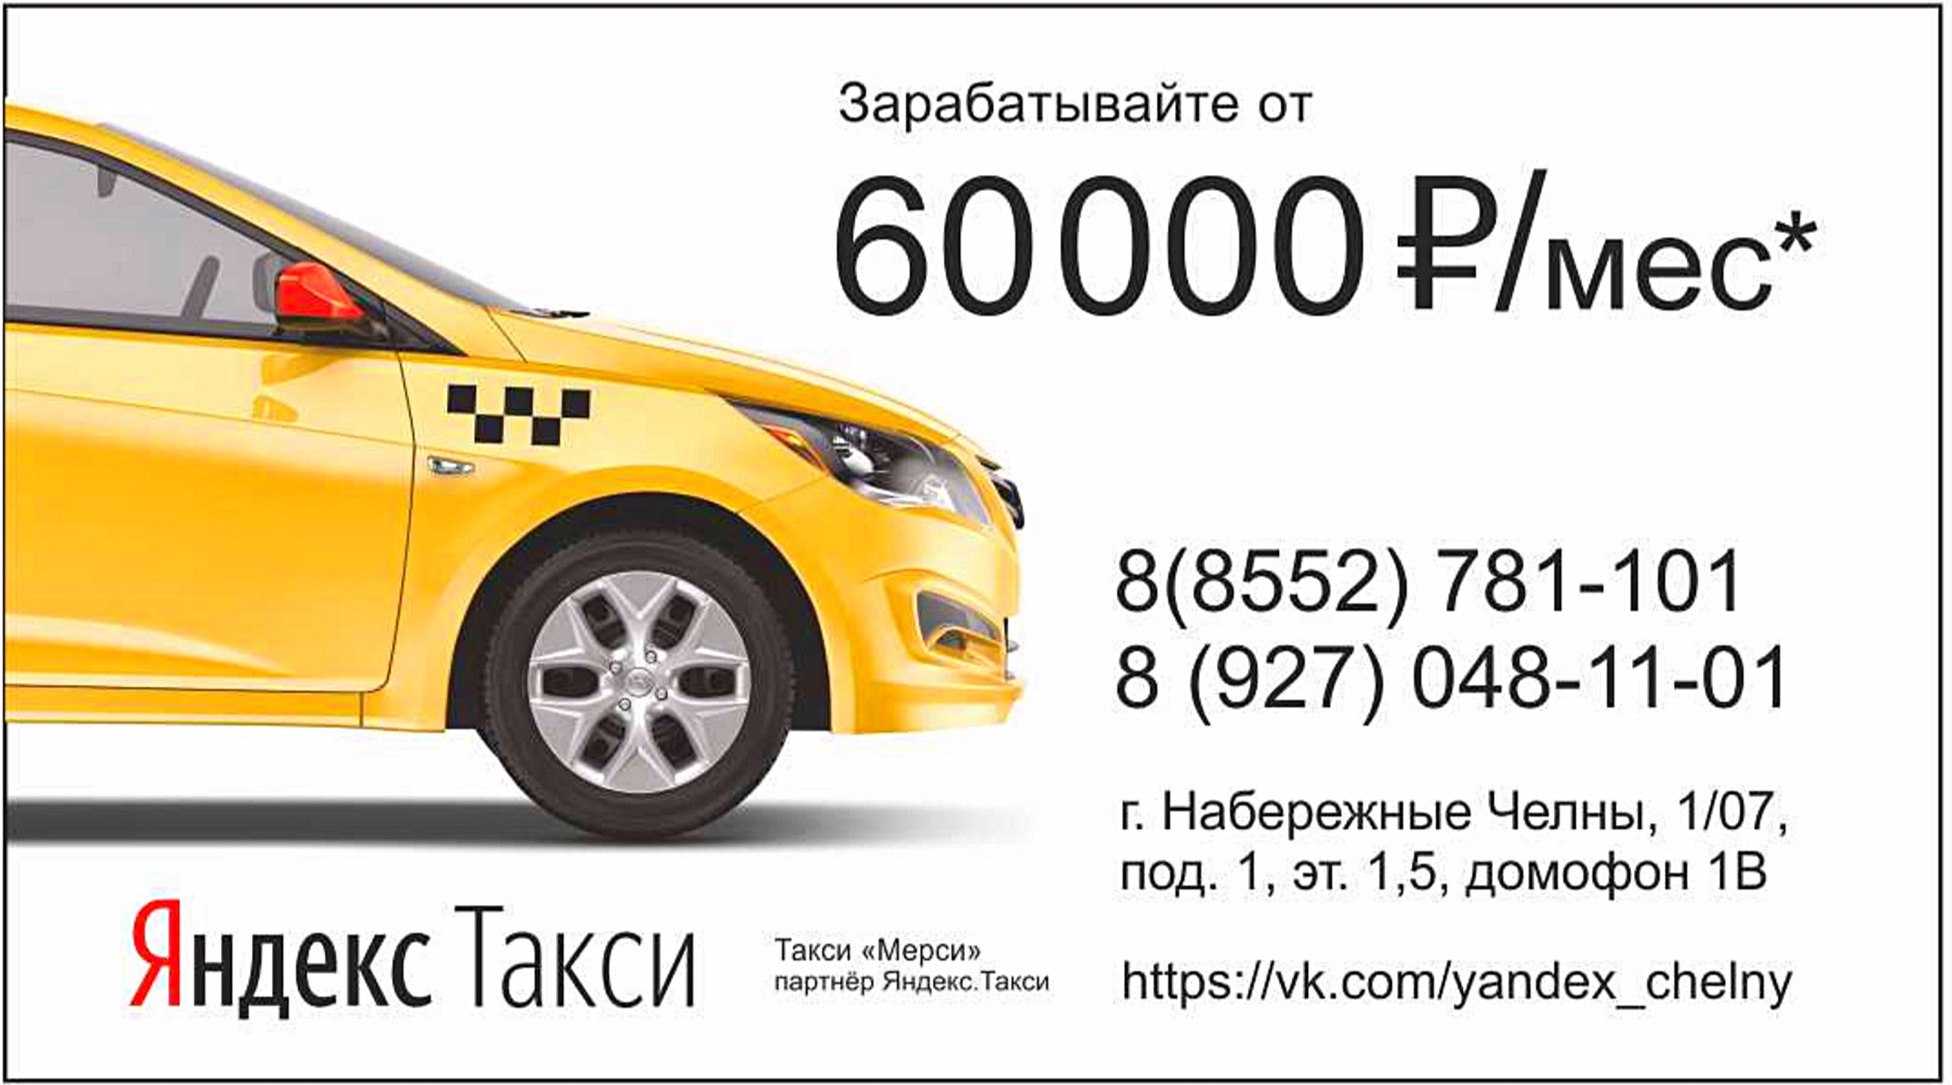 Такси березники номера телефонов. Визитка такси. Такси Набережные Челны номера.